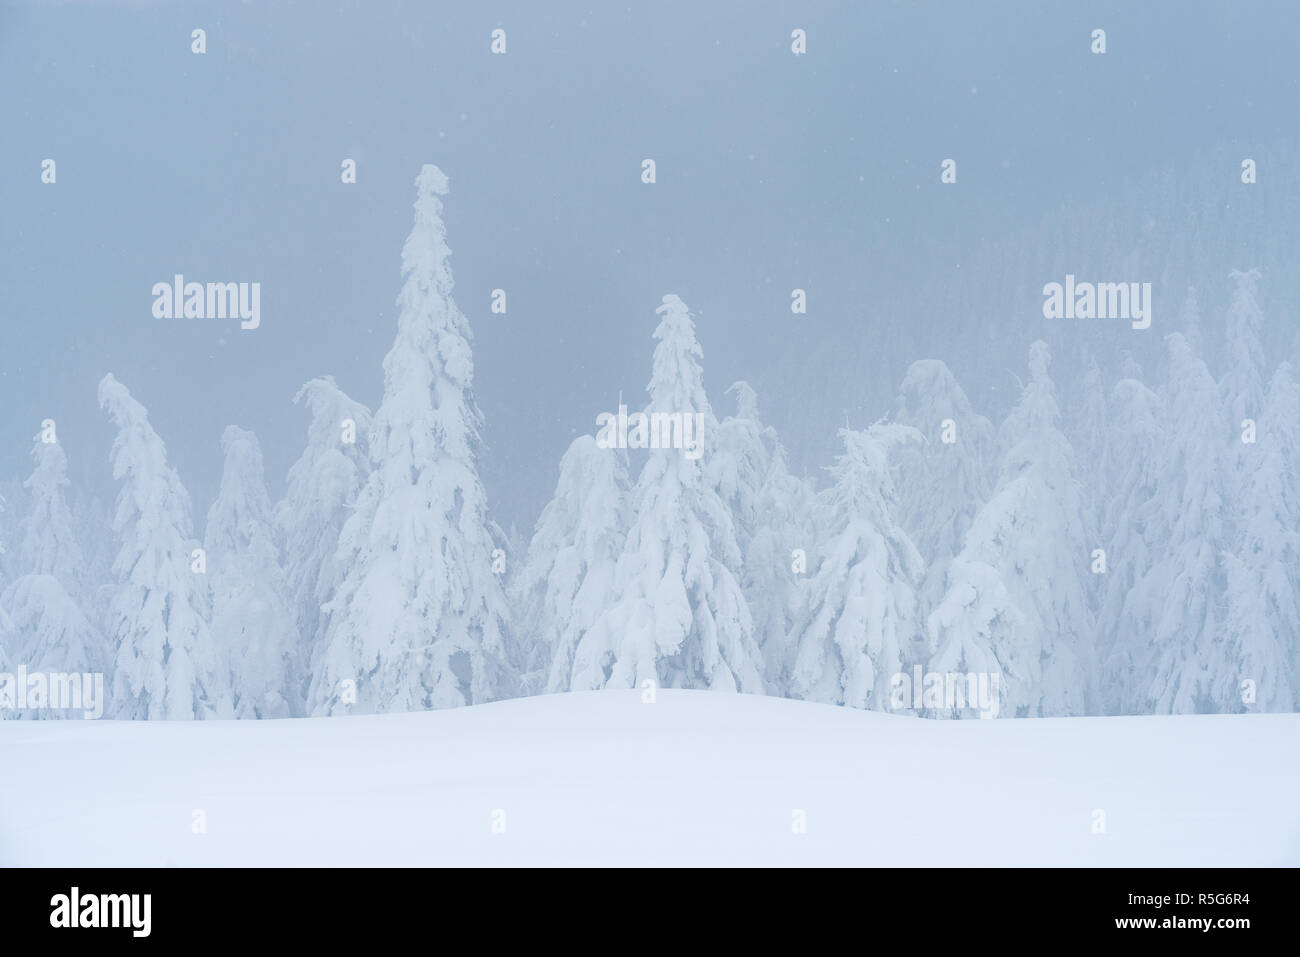 New Scenic 5 posti d'inverno. Coperta di neve di abeti. La nebbia in una foresta di montagna Foto Stock